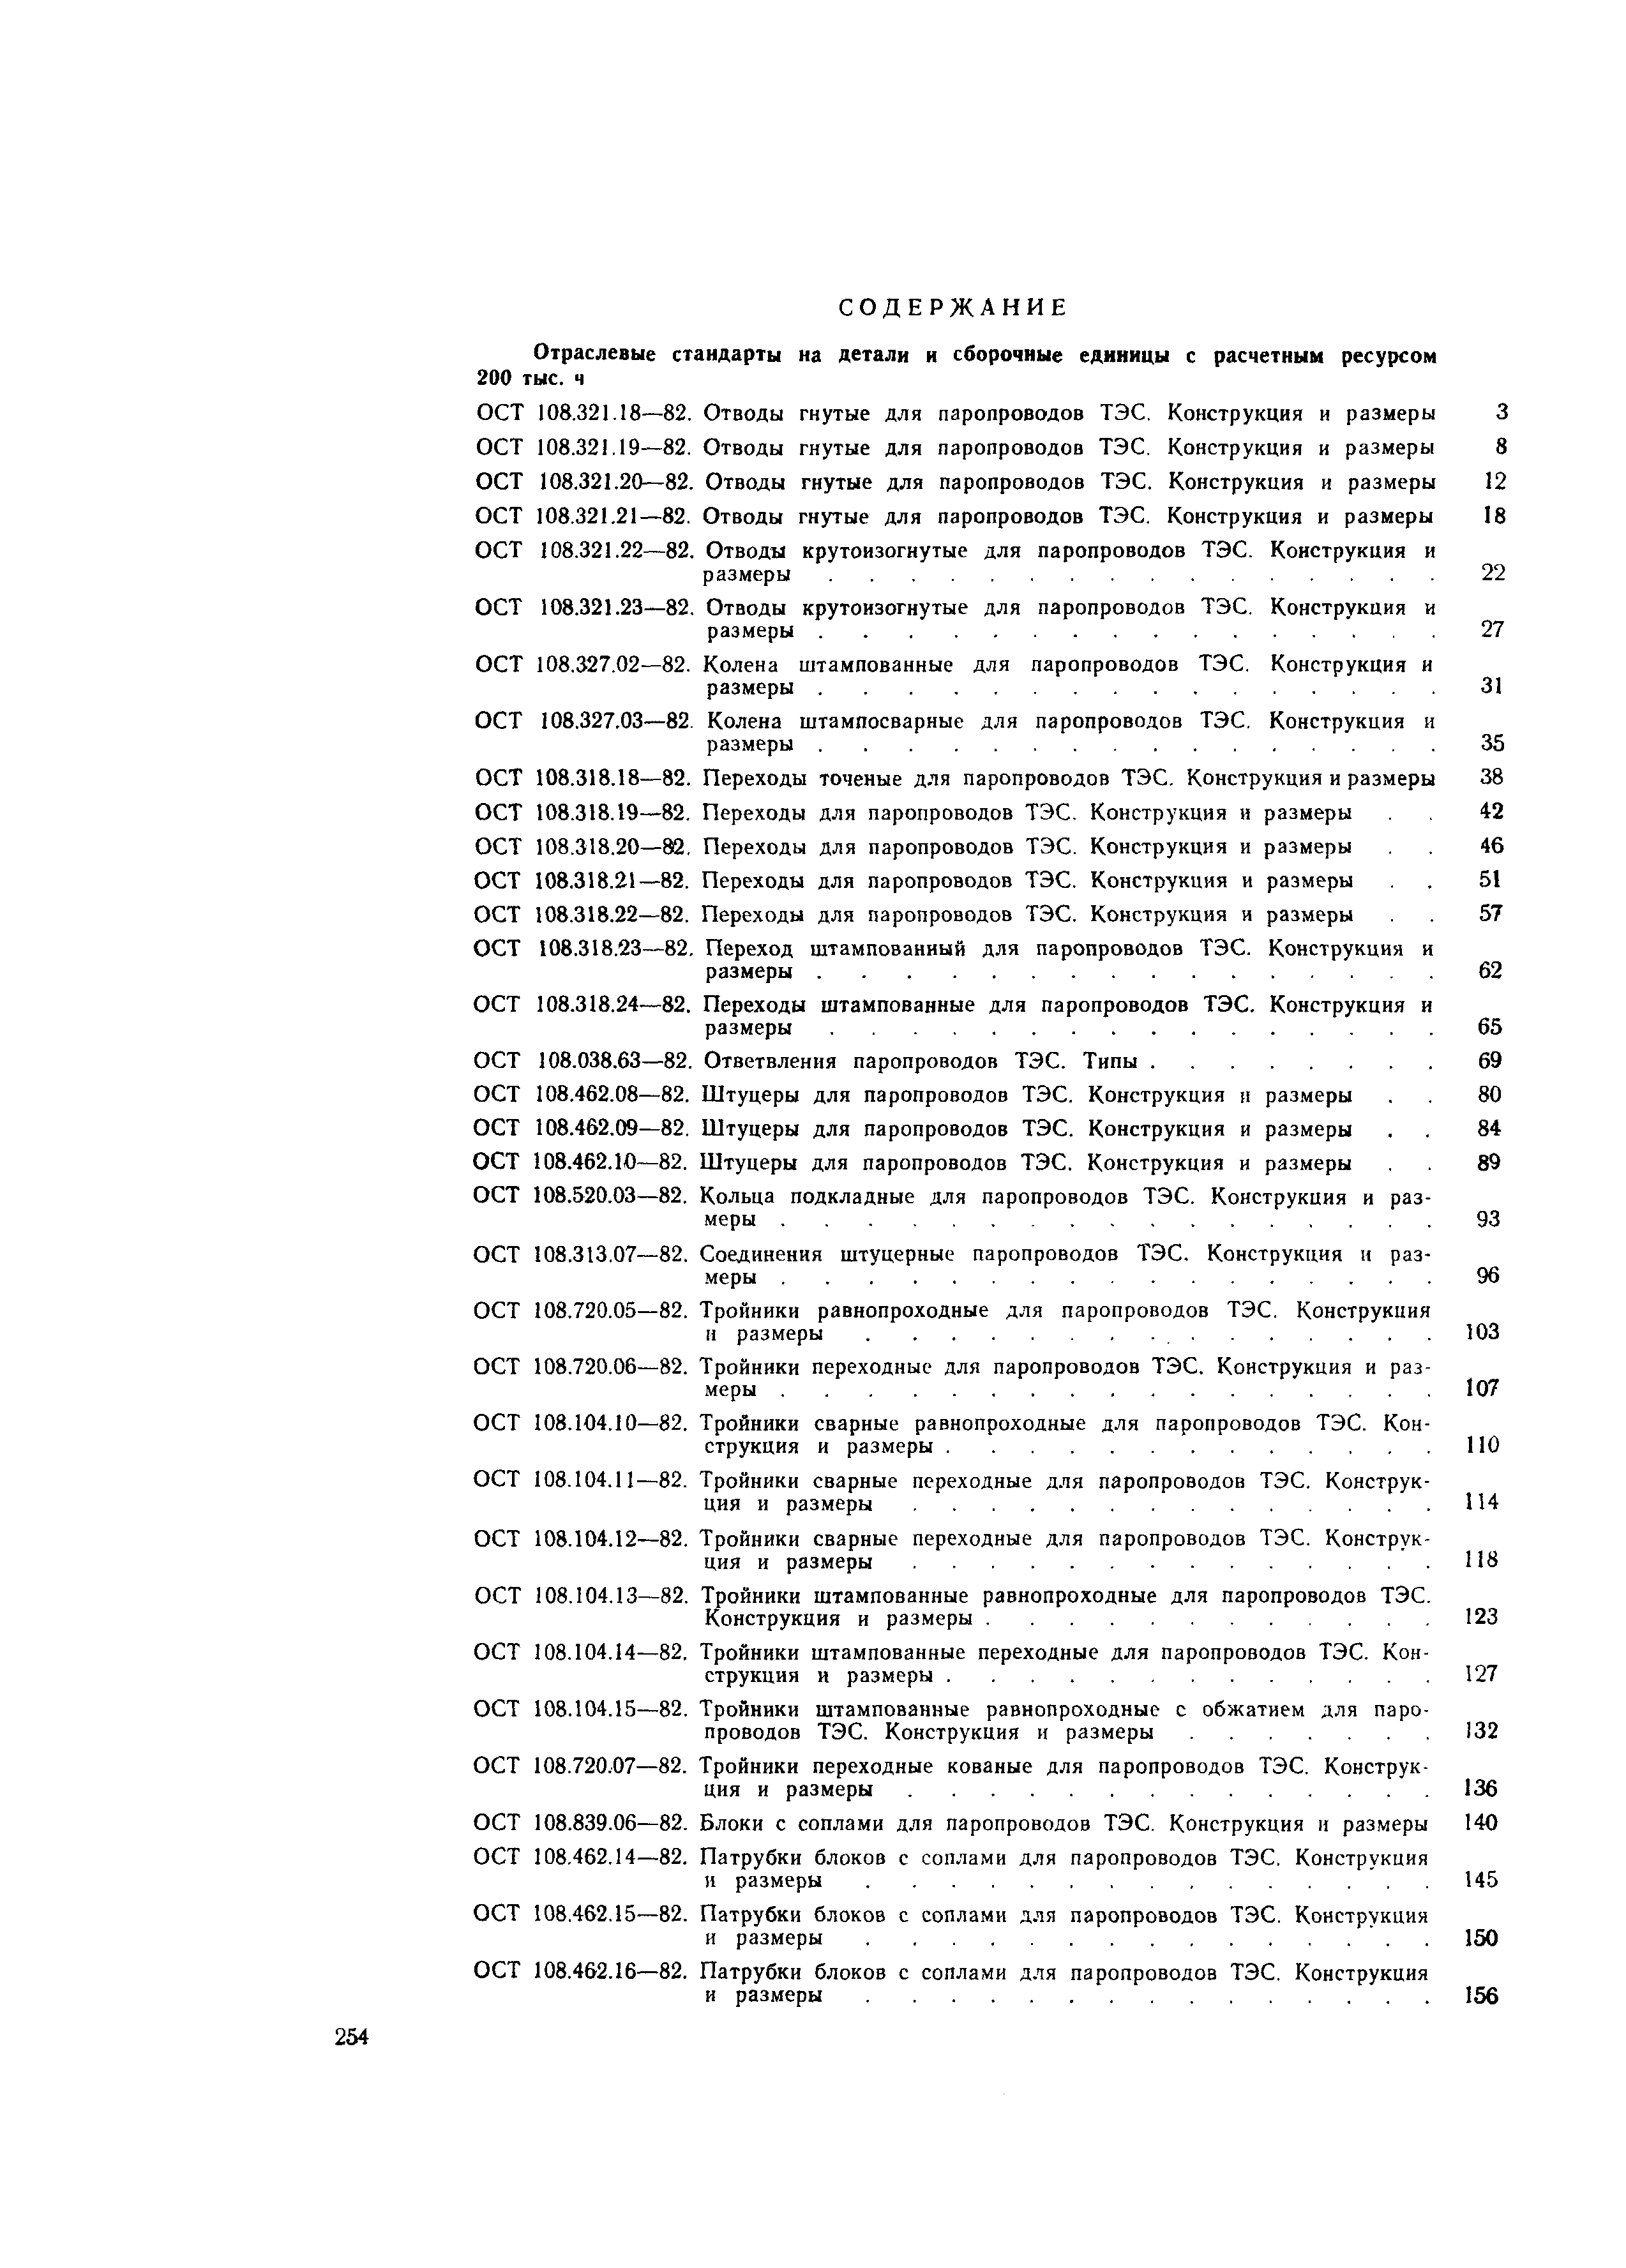 ОСТ 108.104.19-82